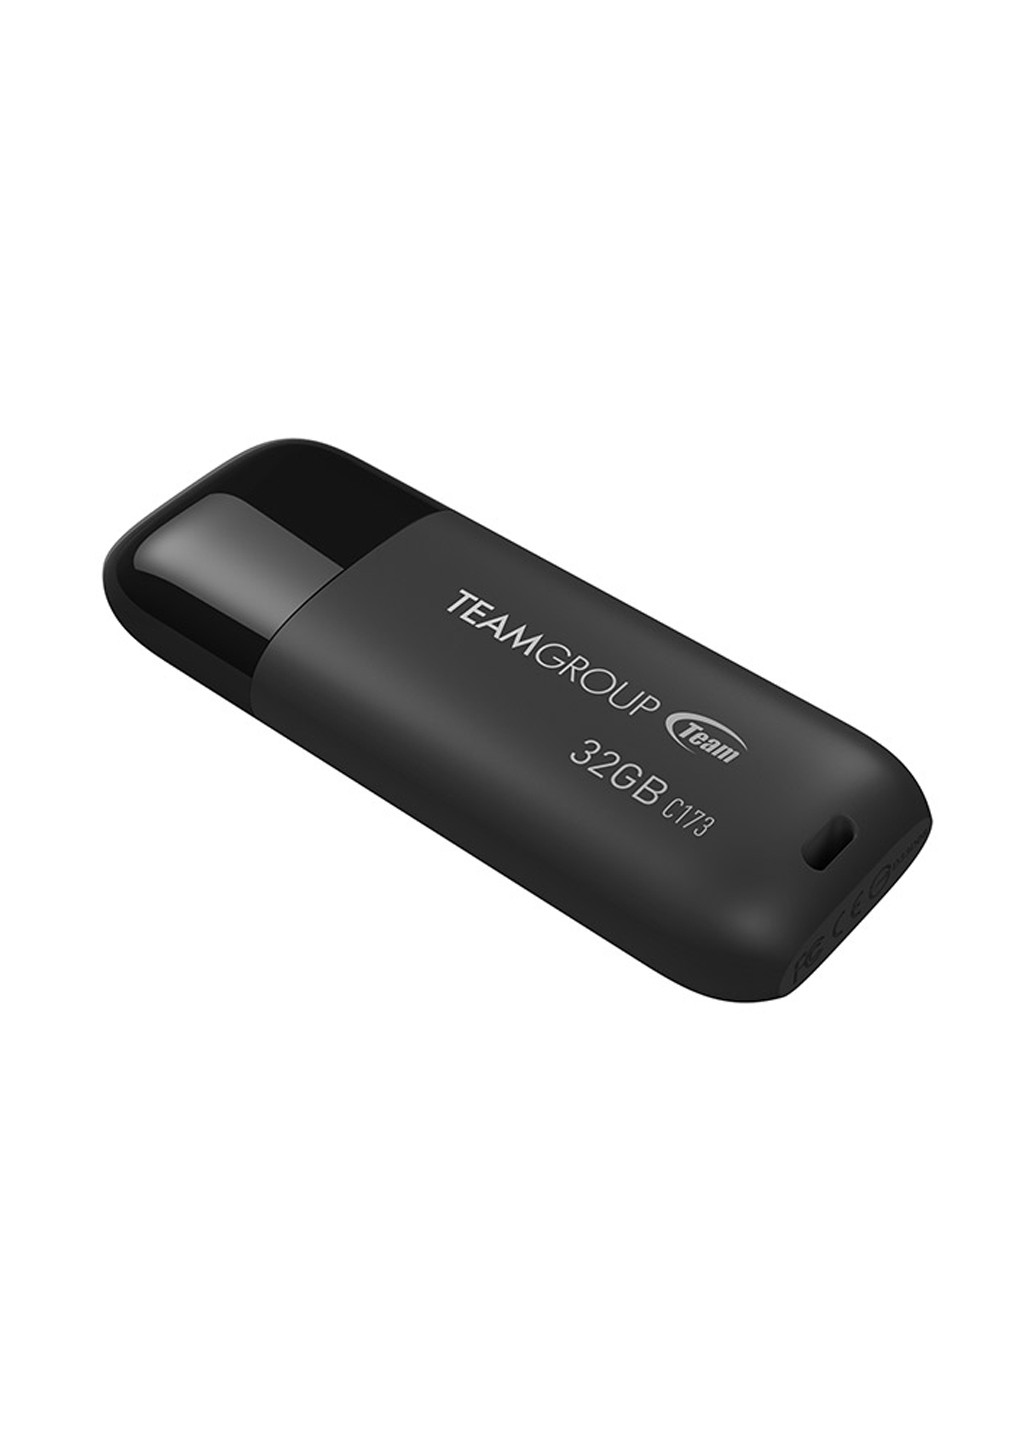 Флеш память USB C173 32GB Pearl Black (TC17332GB01) Team флеш память usb team c173 32gb pearl black (tc17332gb01) (134201788)